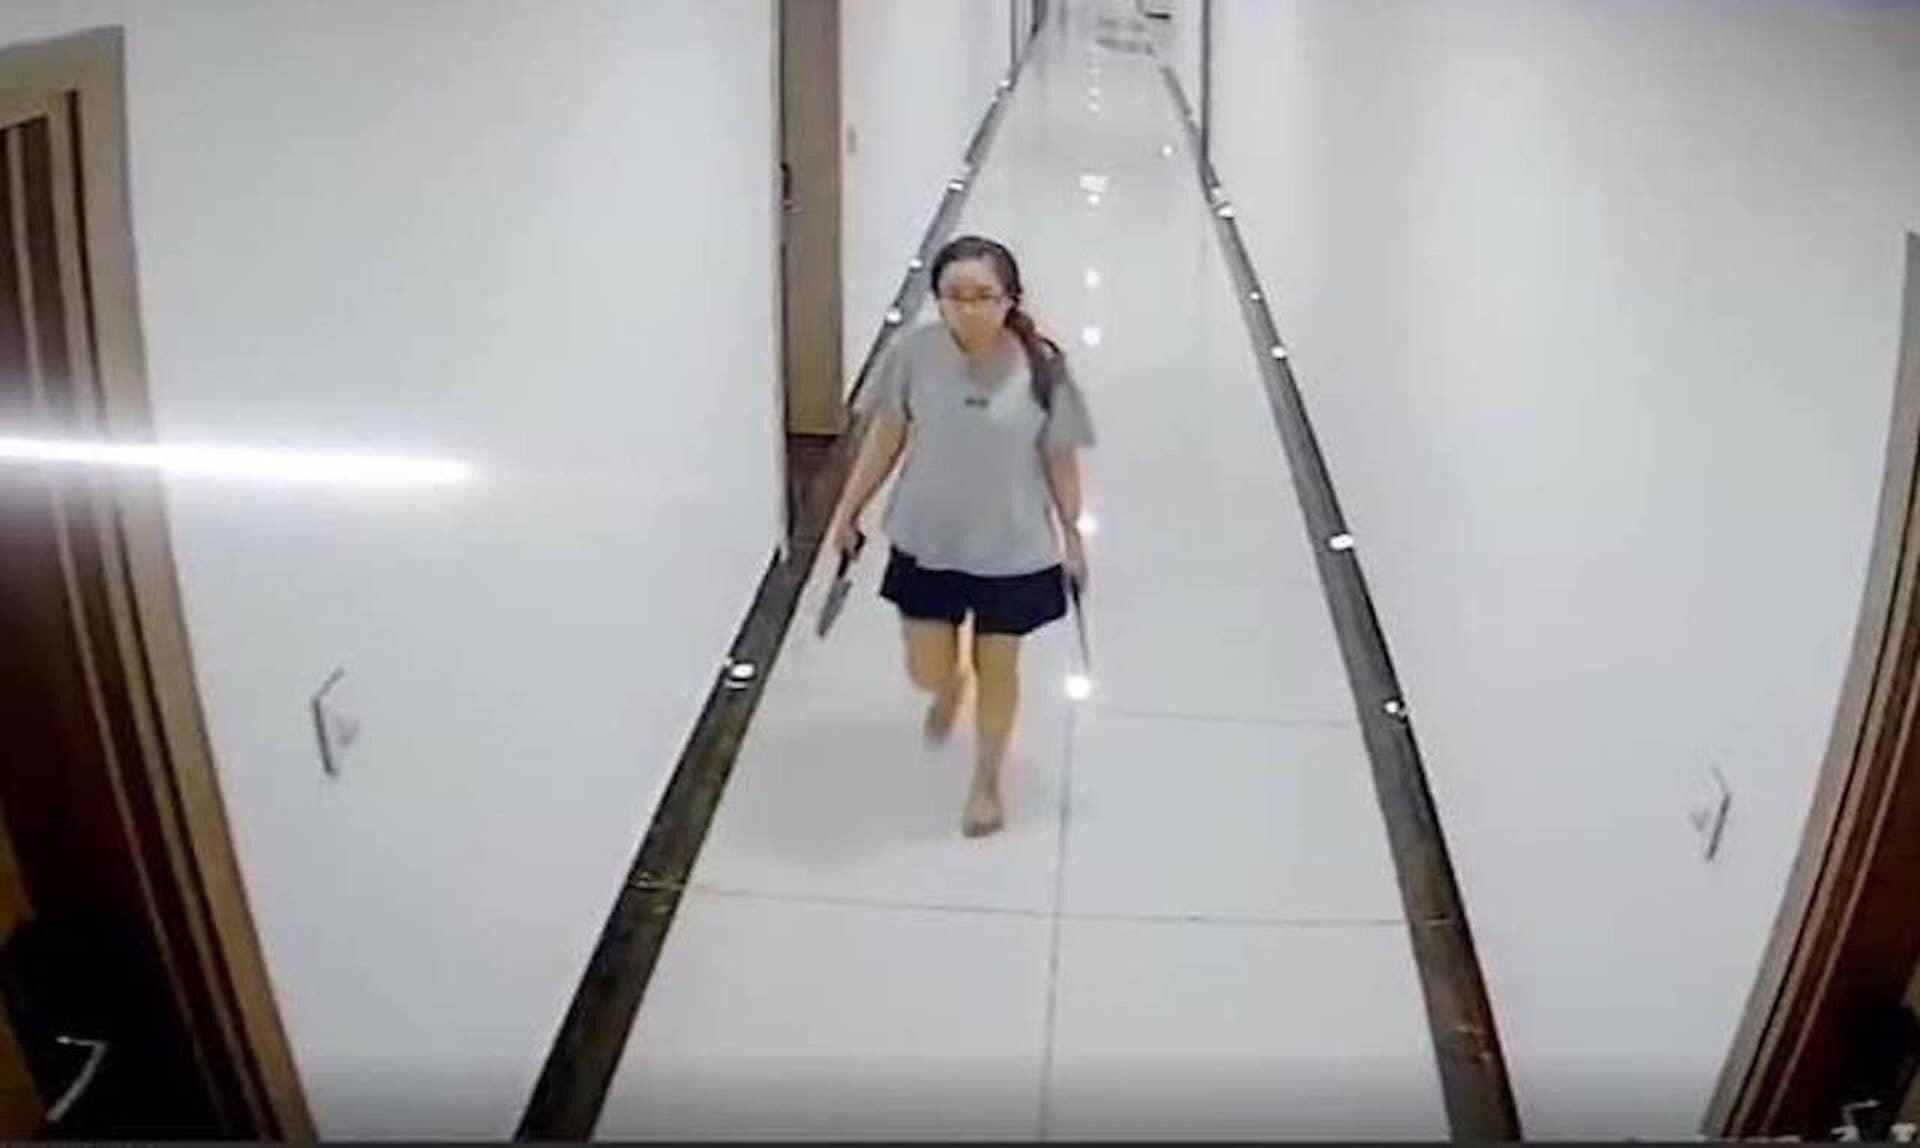 Người phụ nữ cầm dao đi dọc hành lang, đe doạ hàng xóm trong chung cư ở Hà Nội - 1